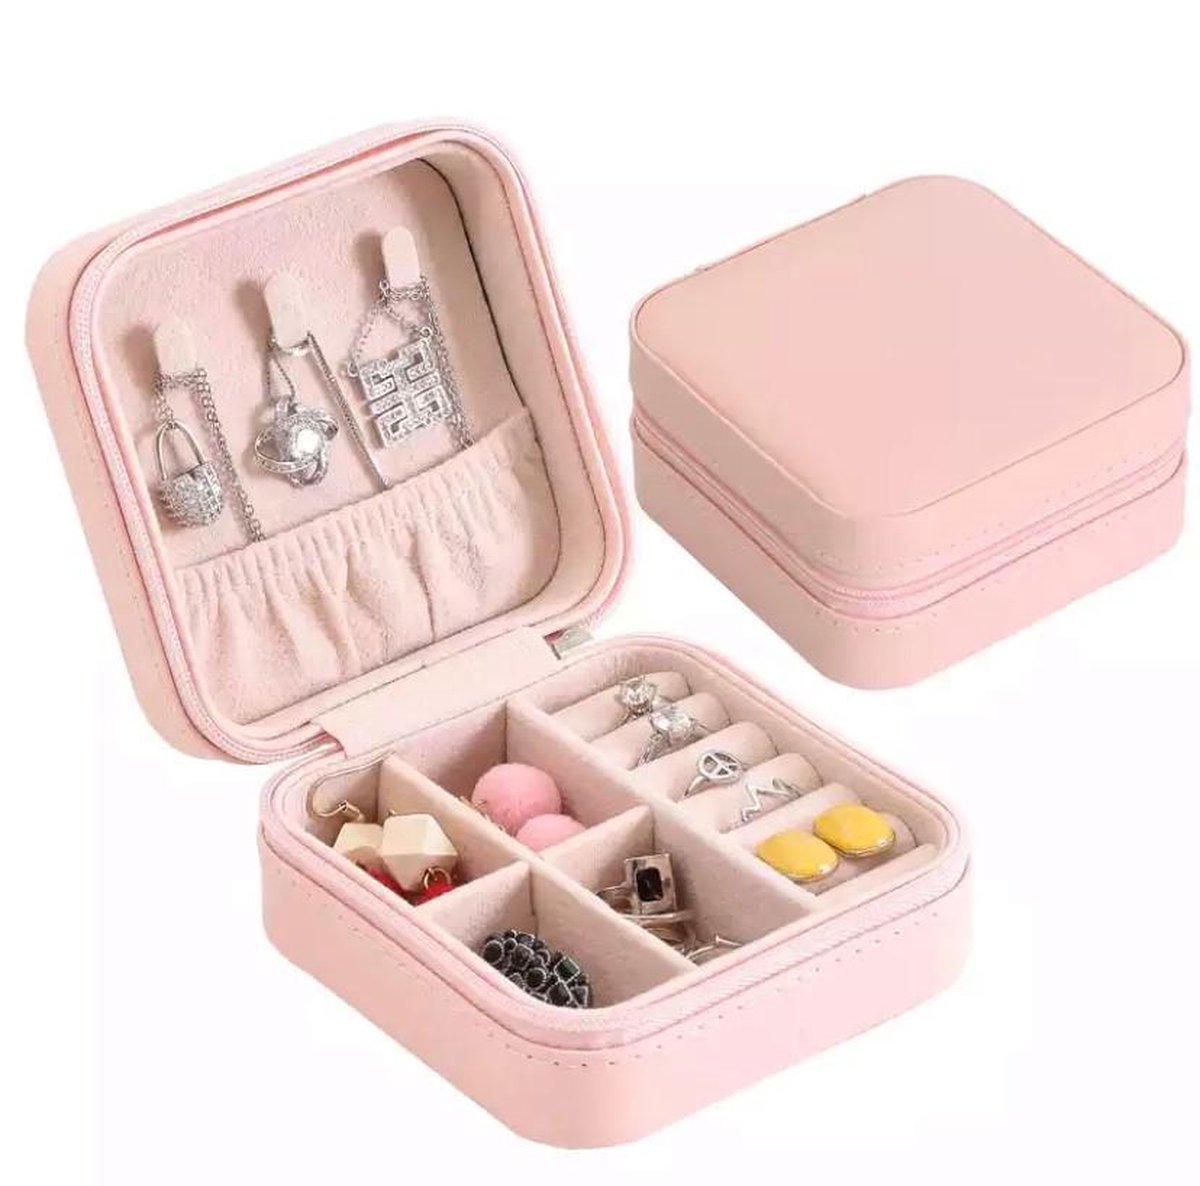 Qrola luxe fluwelen sieradendoos compact roze met poetsdoekje / Valentijnsdag / premium jewelry box / juwelendoos / kettingen, oorbellen, ringen / geschenk / cadeautje voor haar / sieradendoosje